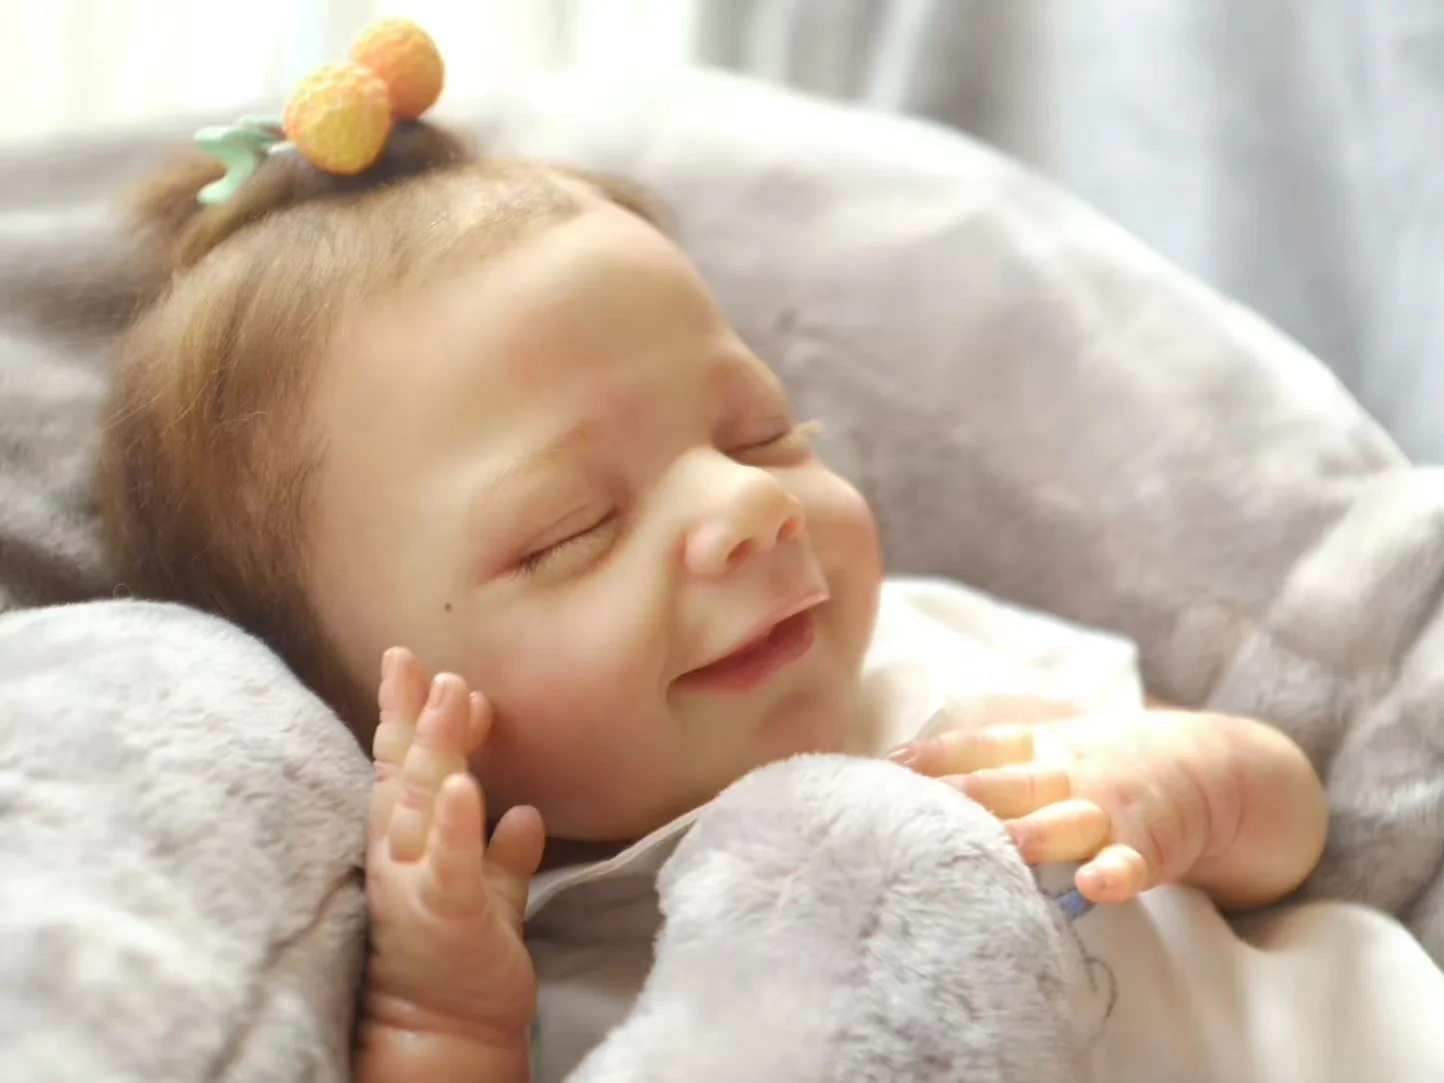 Bebe reborn 45 cm - fofinha - Artigos infantis - Novo Aleixo